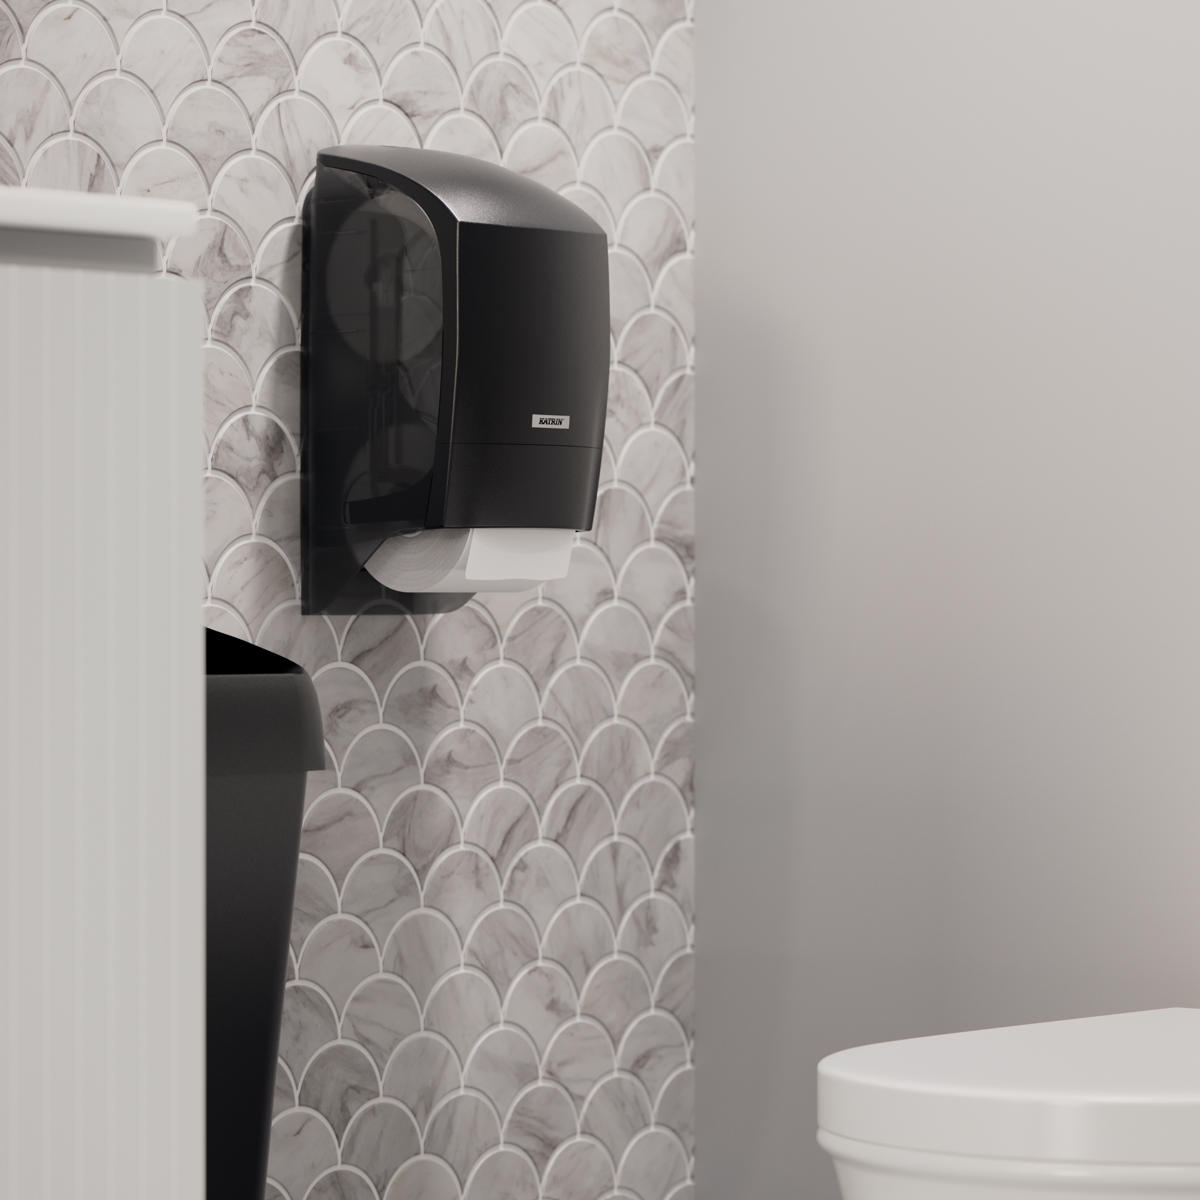 Der Spender bietet Platz für zwei Toiletten-papierrollen. Wenn eine Rolle aufgebraucht ist, fällt die zweite automatisch nach.